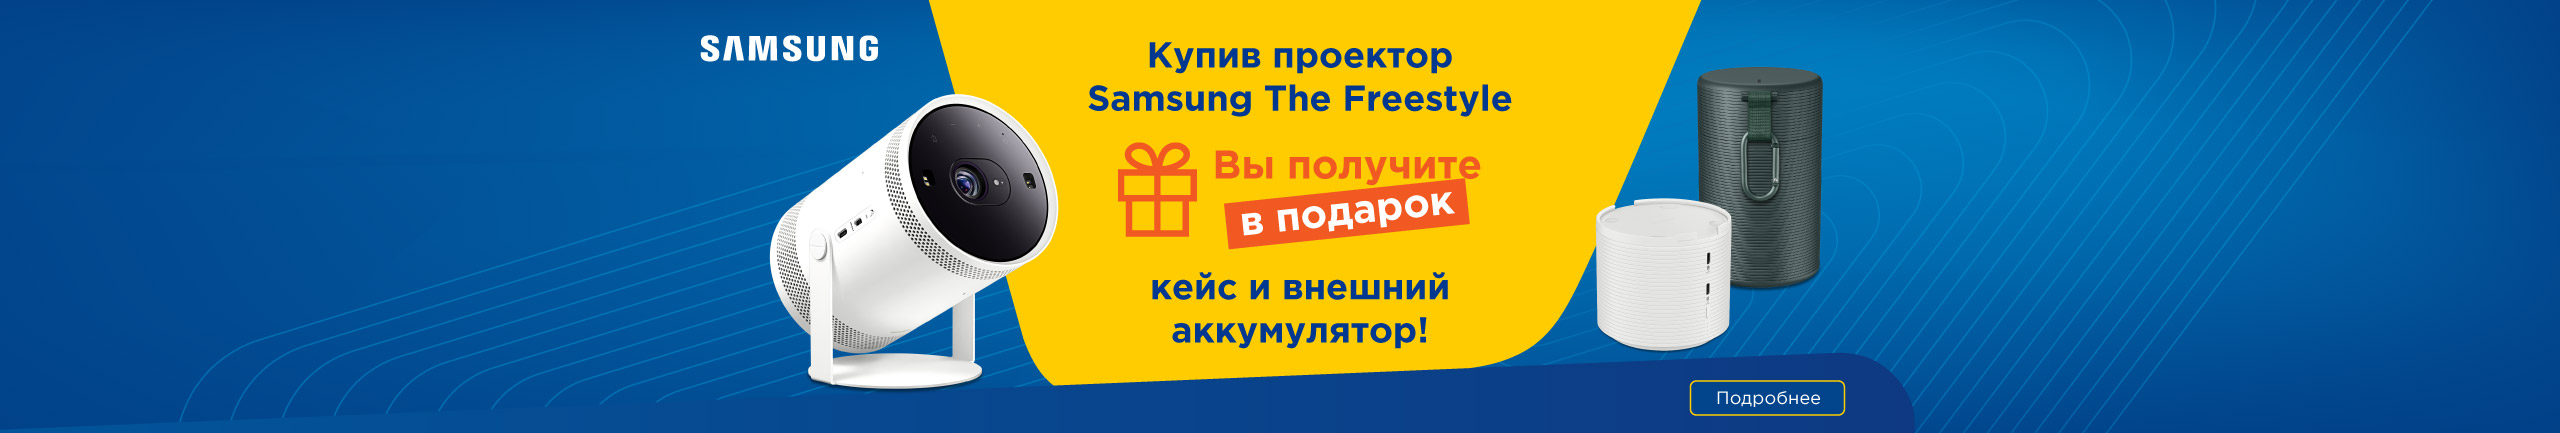 Купив проектор Samsung The Freestyle, Вы получите в подарок кейс и внешний аккумулятор!